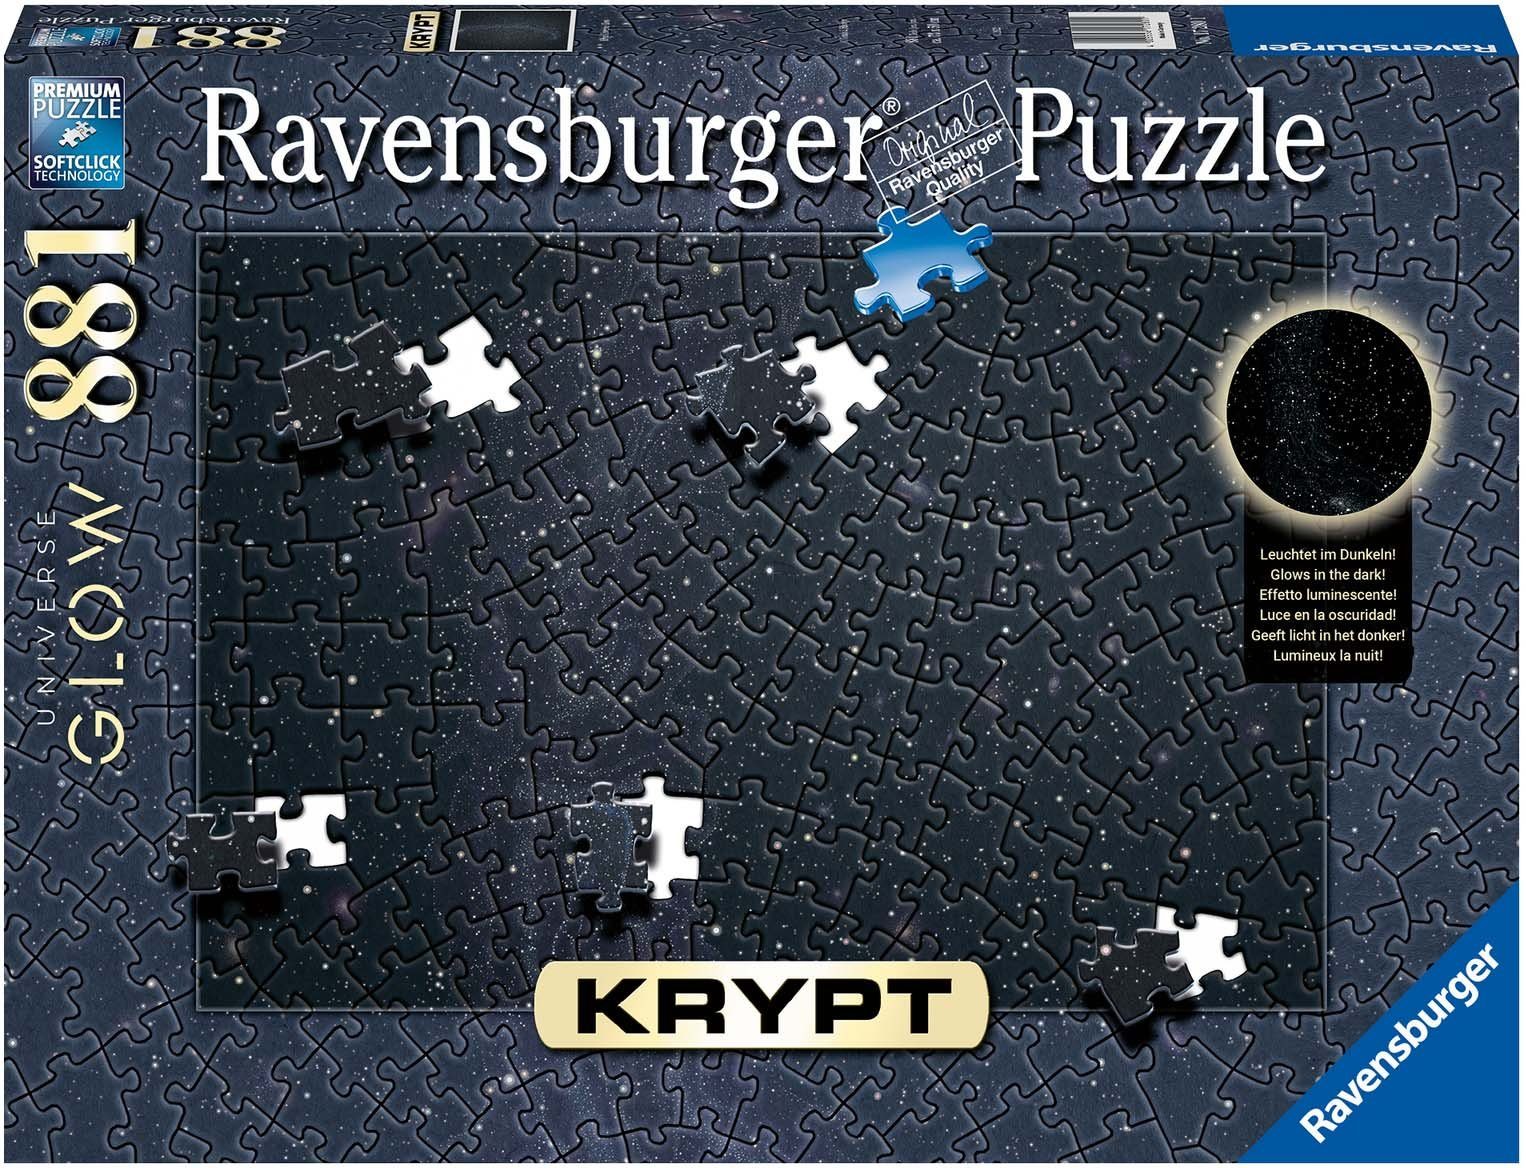 Ravensburger Puzzle Krypt Universe Glow, 881 Puzzleteile, Made in Germany, FSC® - schützt Wald - weltweit